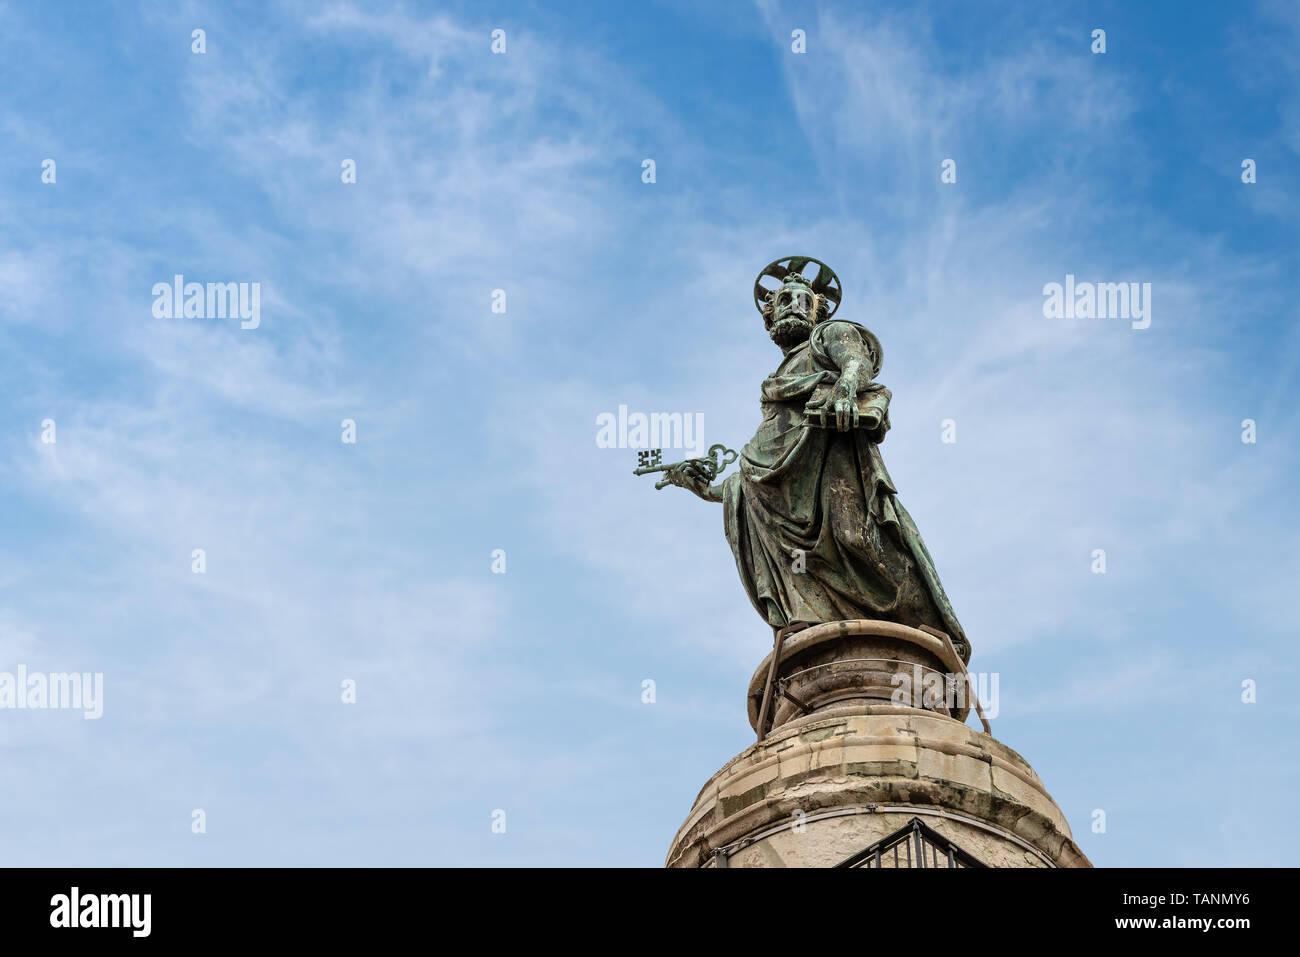 Statue en bronze de Saint Pierre (1588) sur le dessus de la colonne Trajane, triomphe romain monument construit par l'empereur Trajan. Rome, UNESCO World Heritage site. Banque D'Images